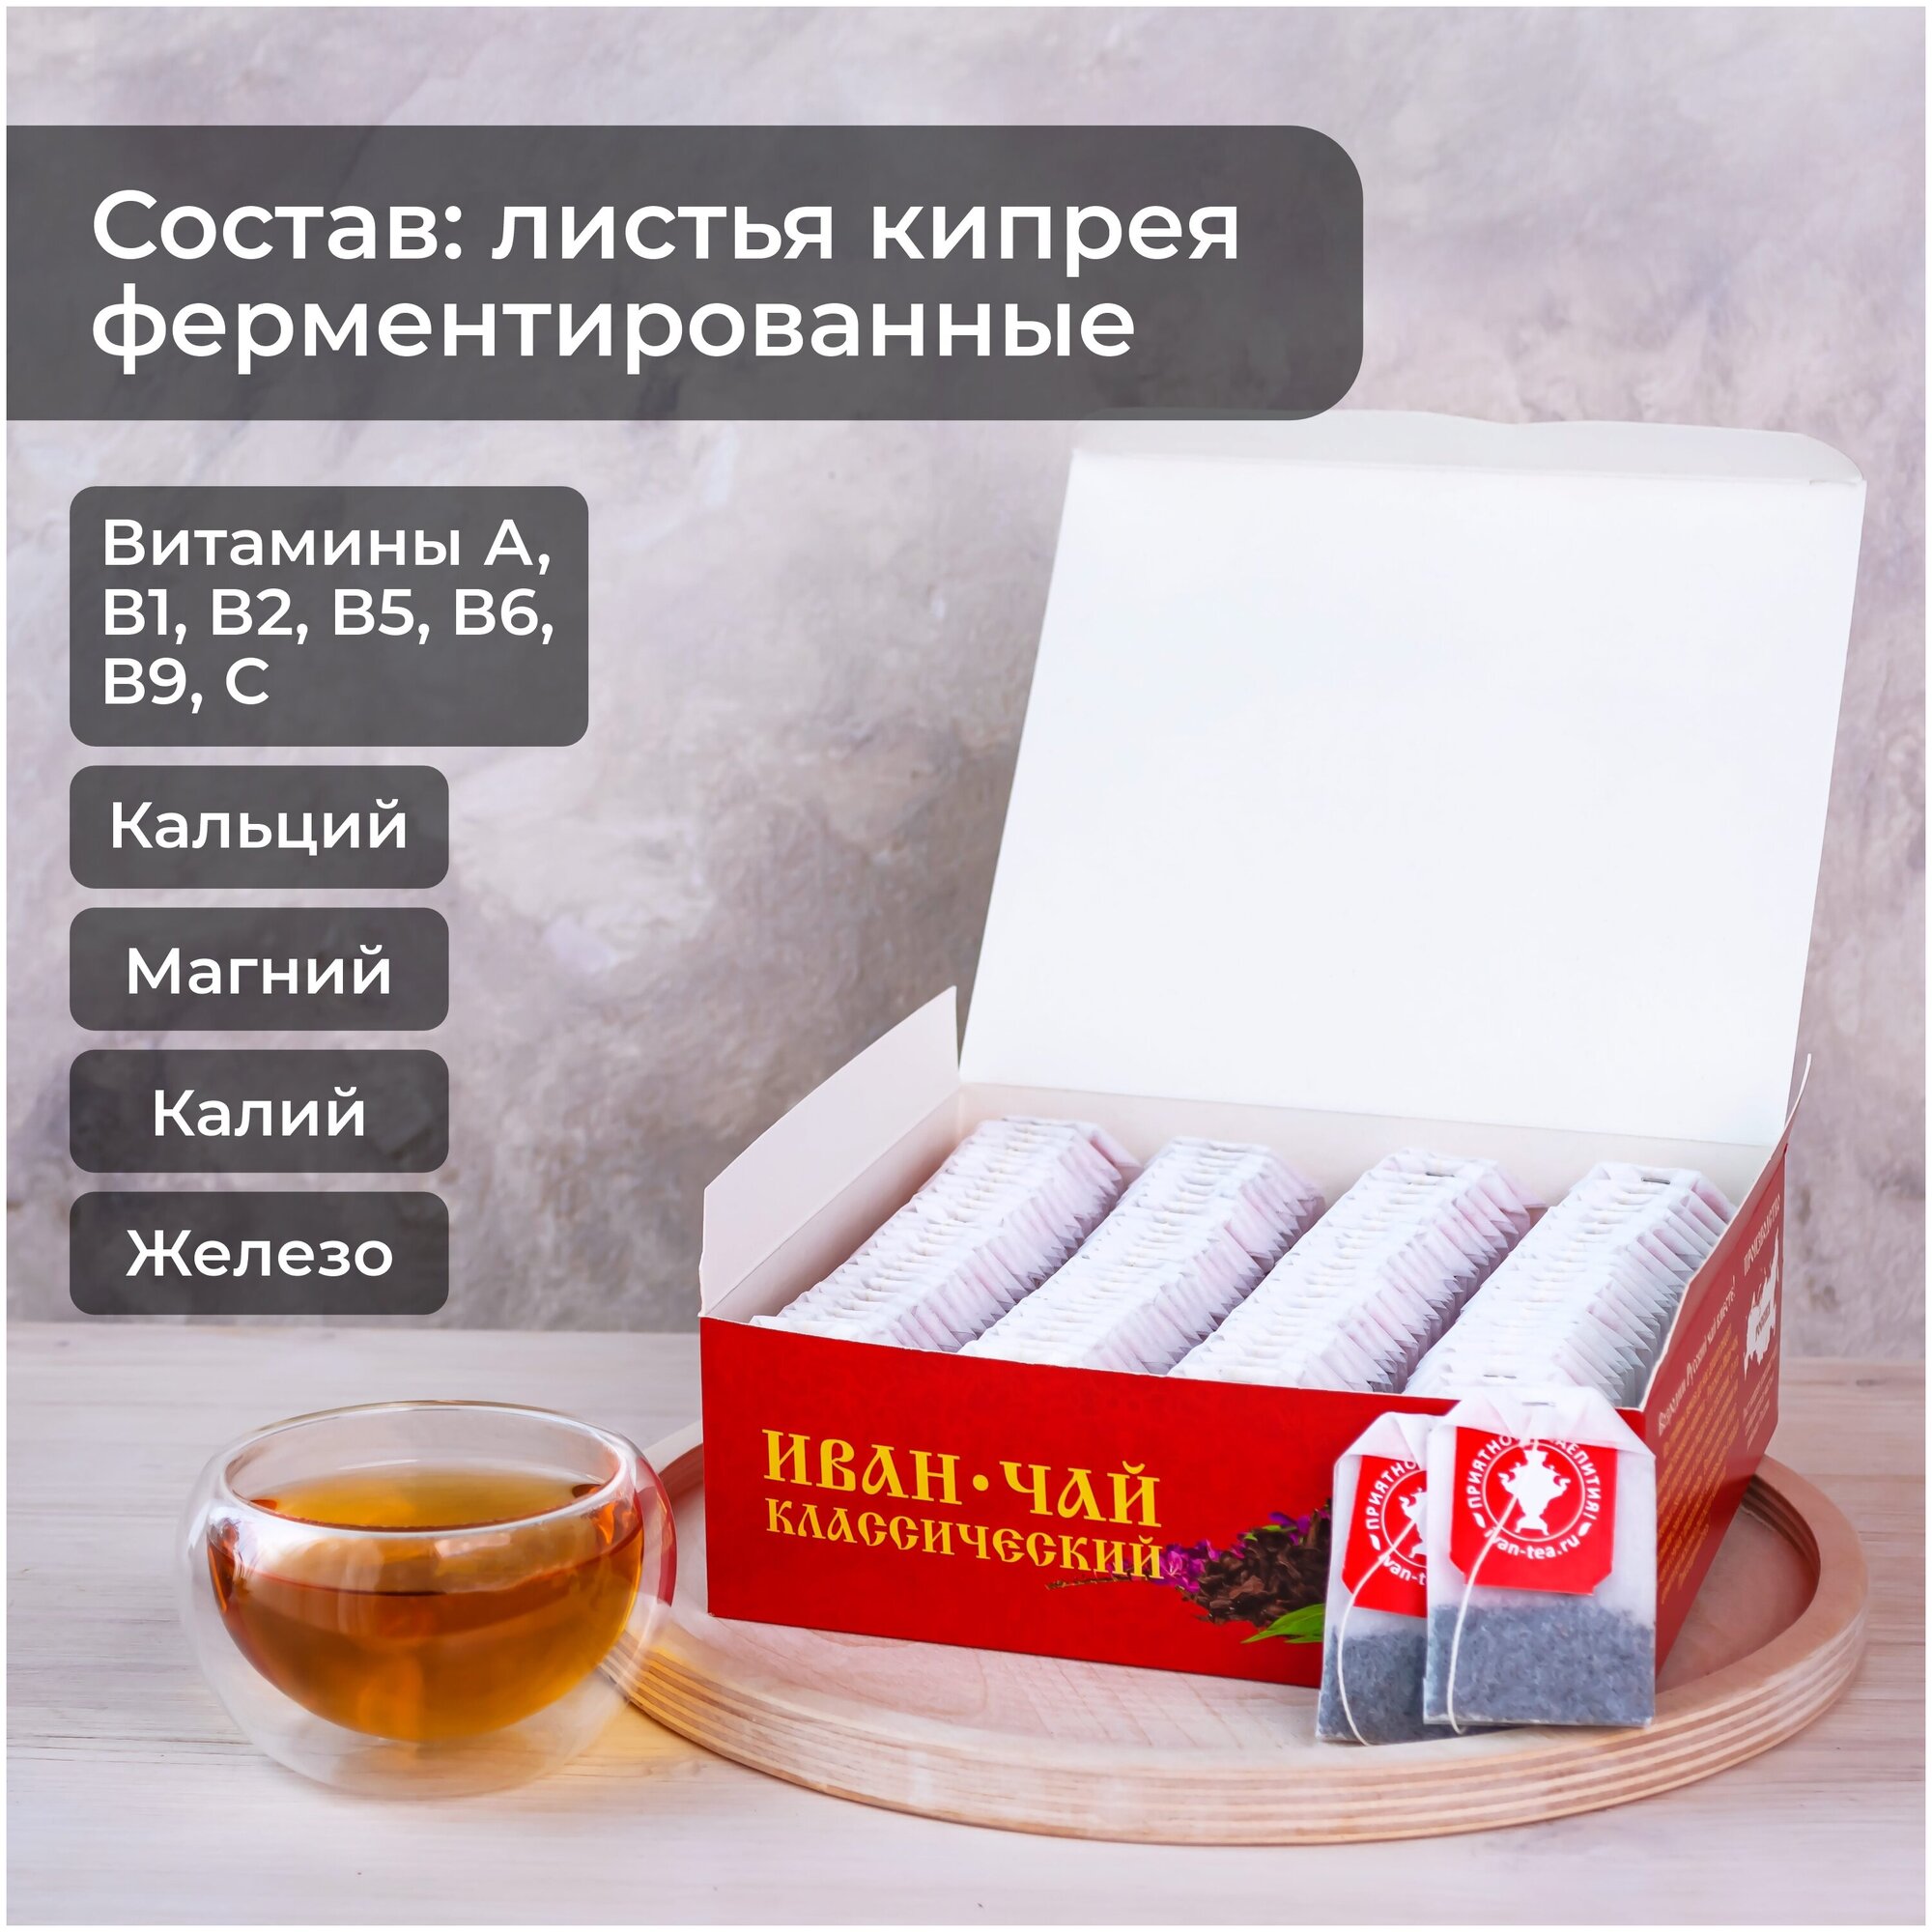 Русский Иван-чай классический, 100 пакетиков с ярлычком, ферментированный натуральный травяной чай без кофеина в пакетиках 100 шт